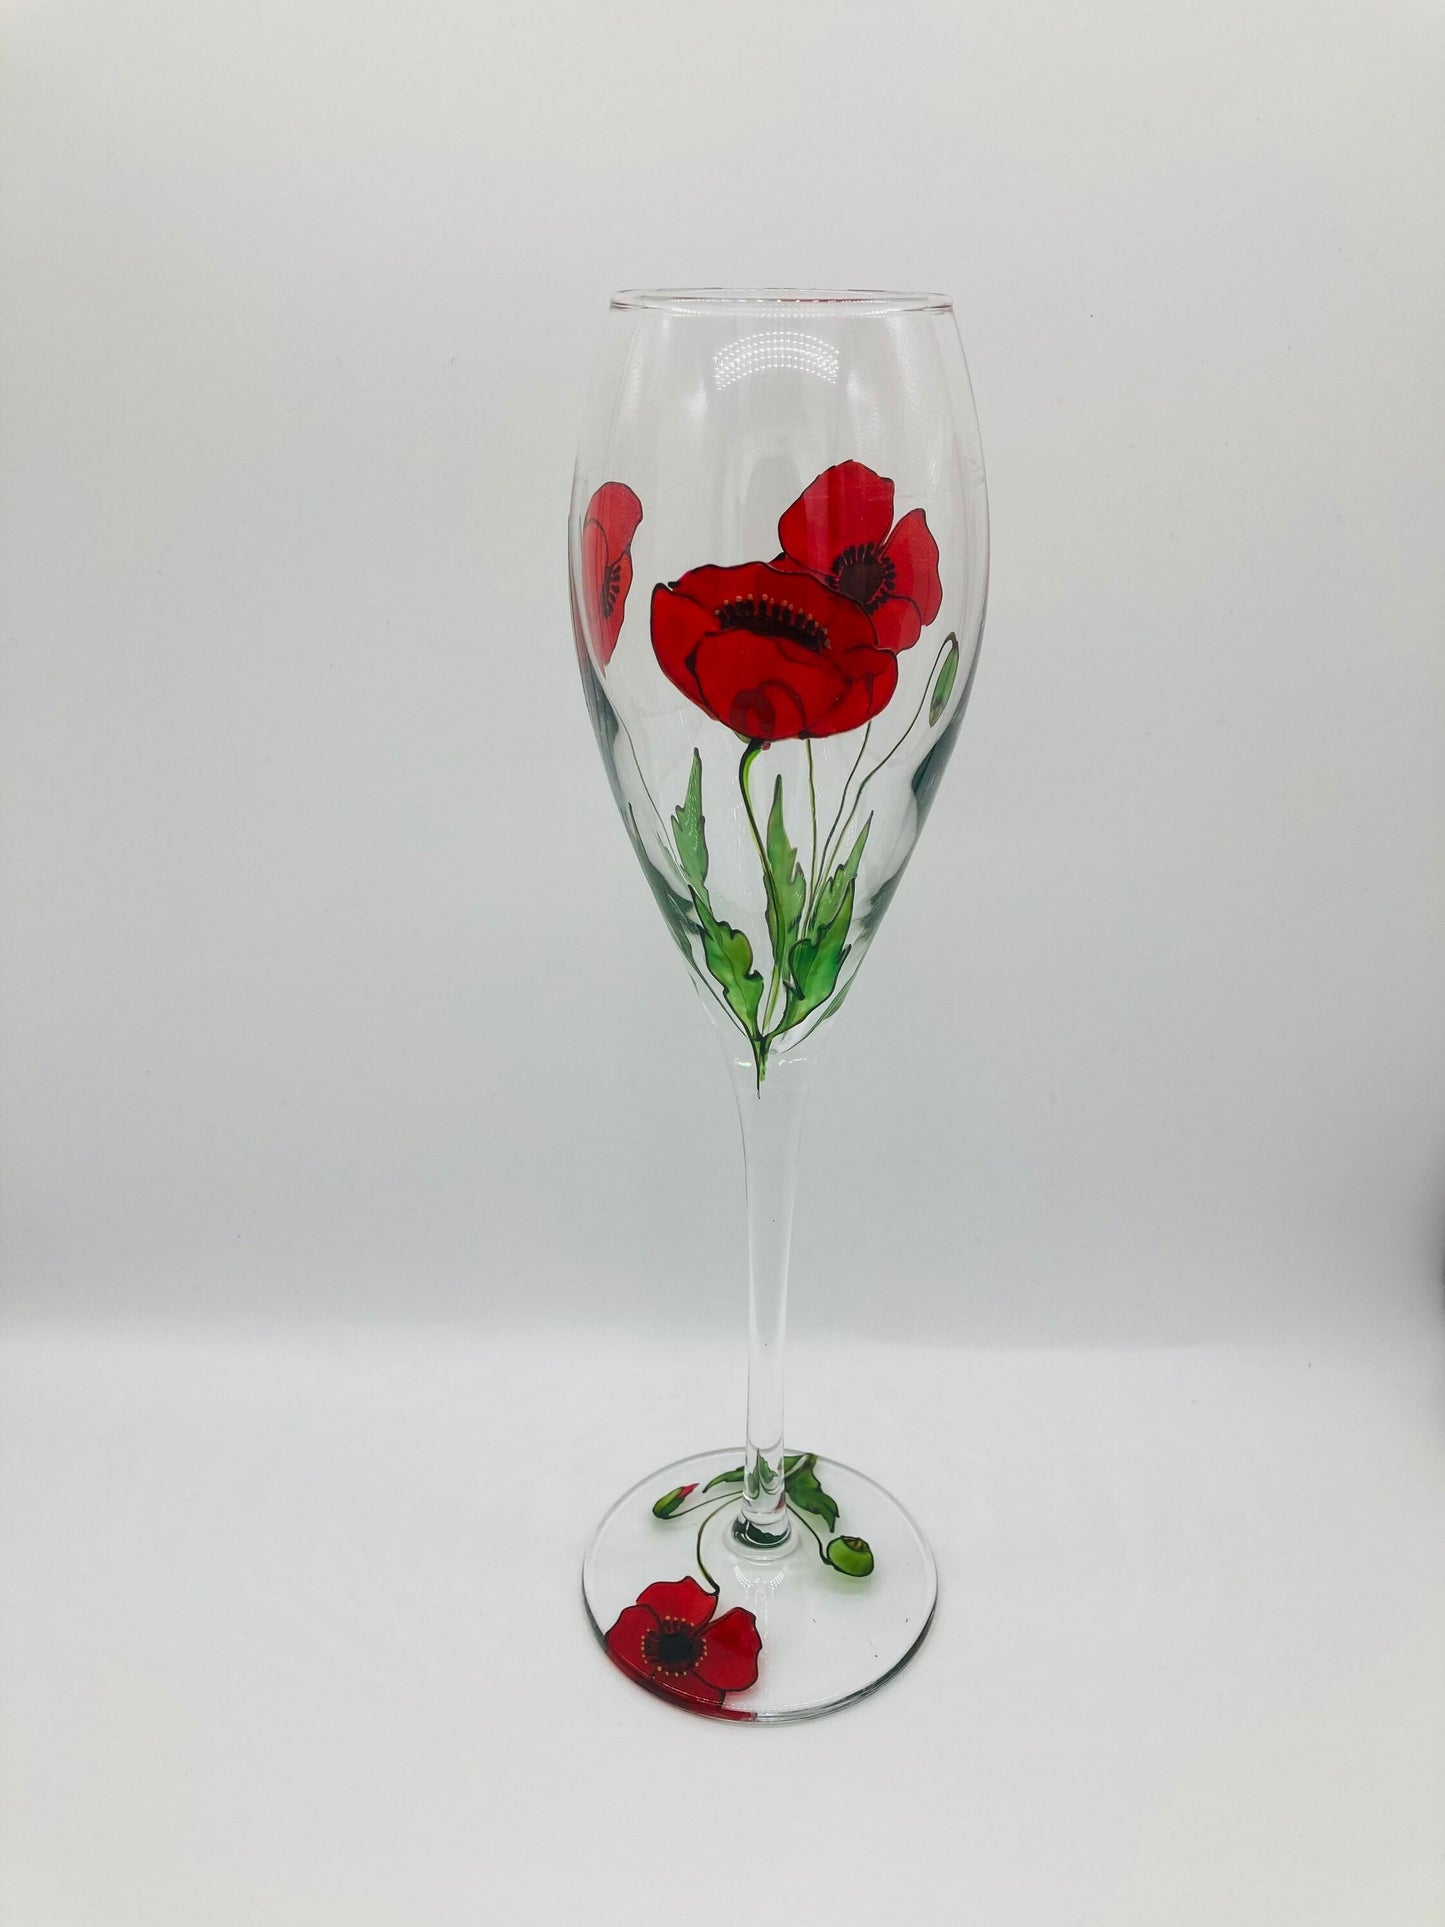 Poppy champagne/prosecco glass